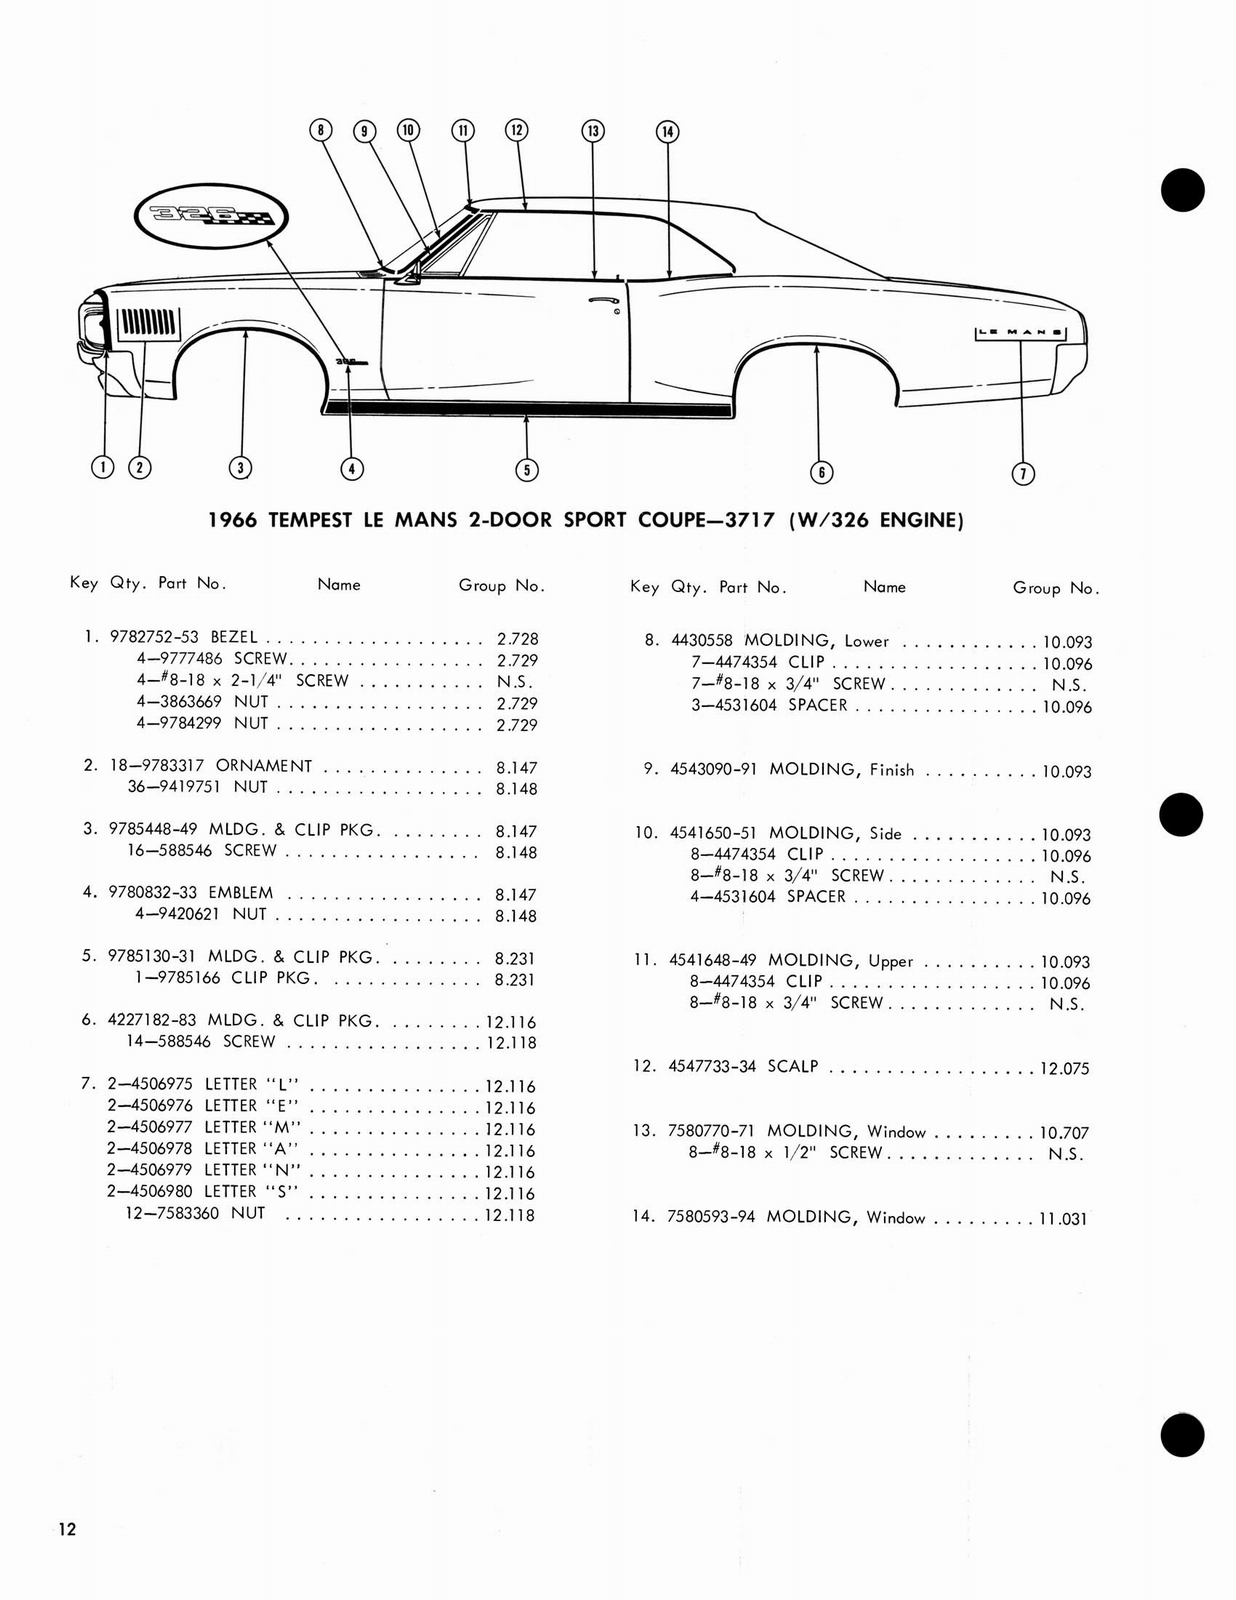 n_1966 Pontiac Molding and Clip Catalog-12.jpg